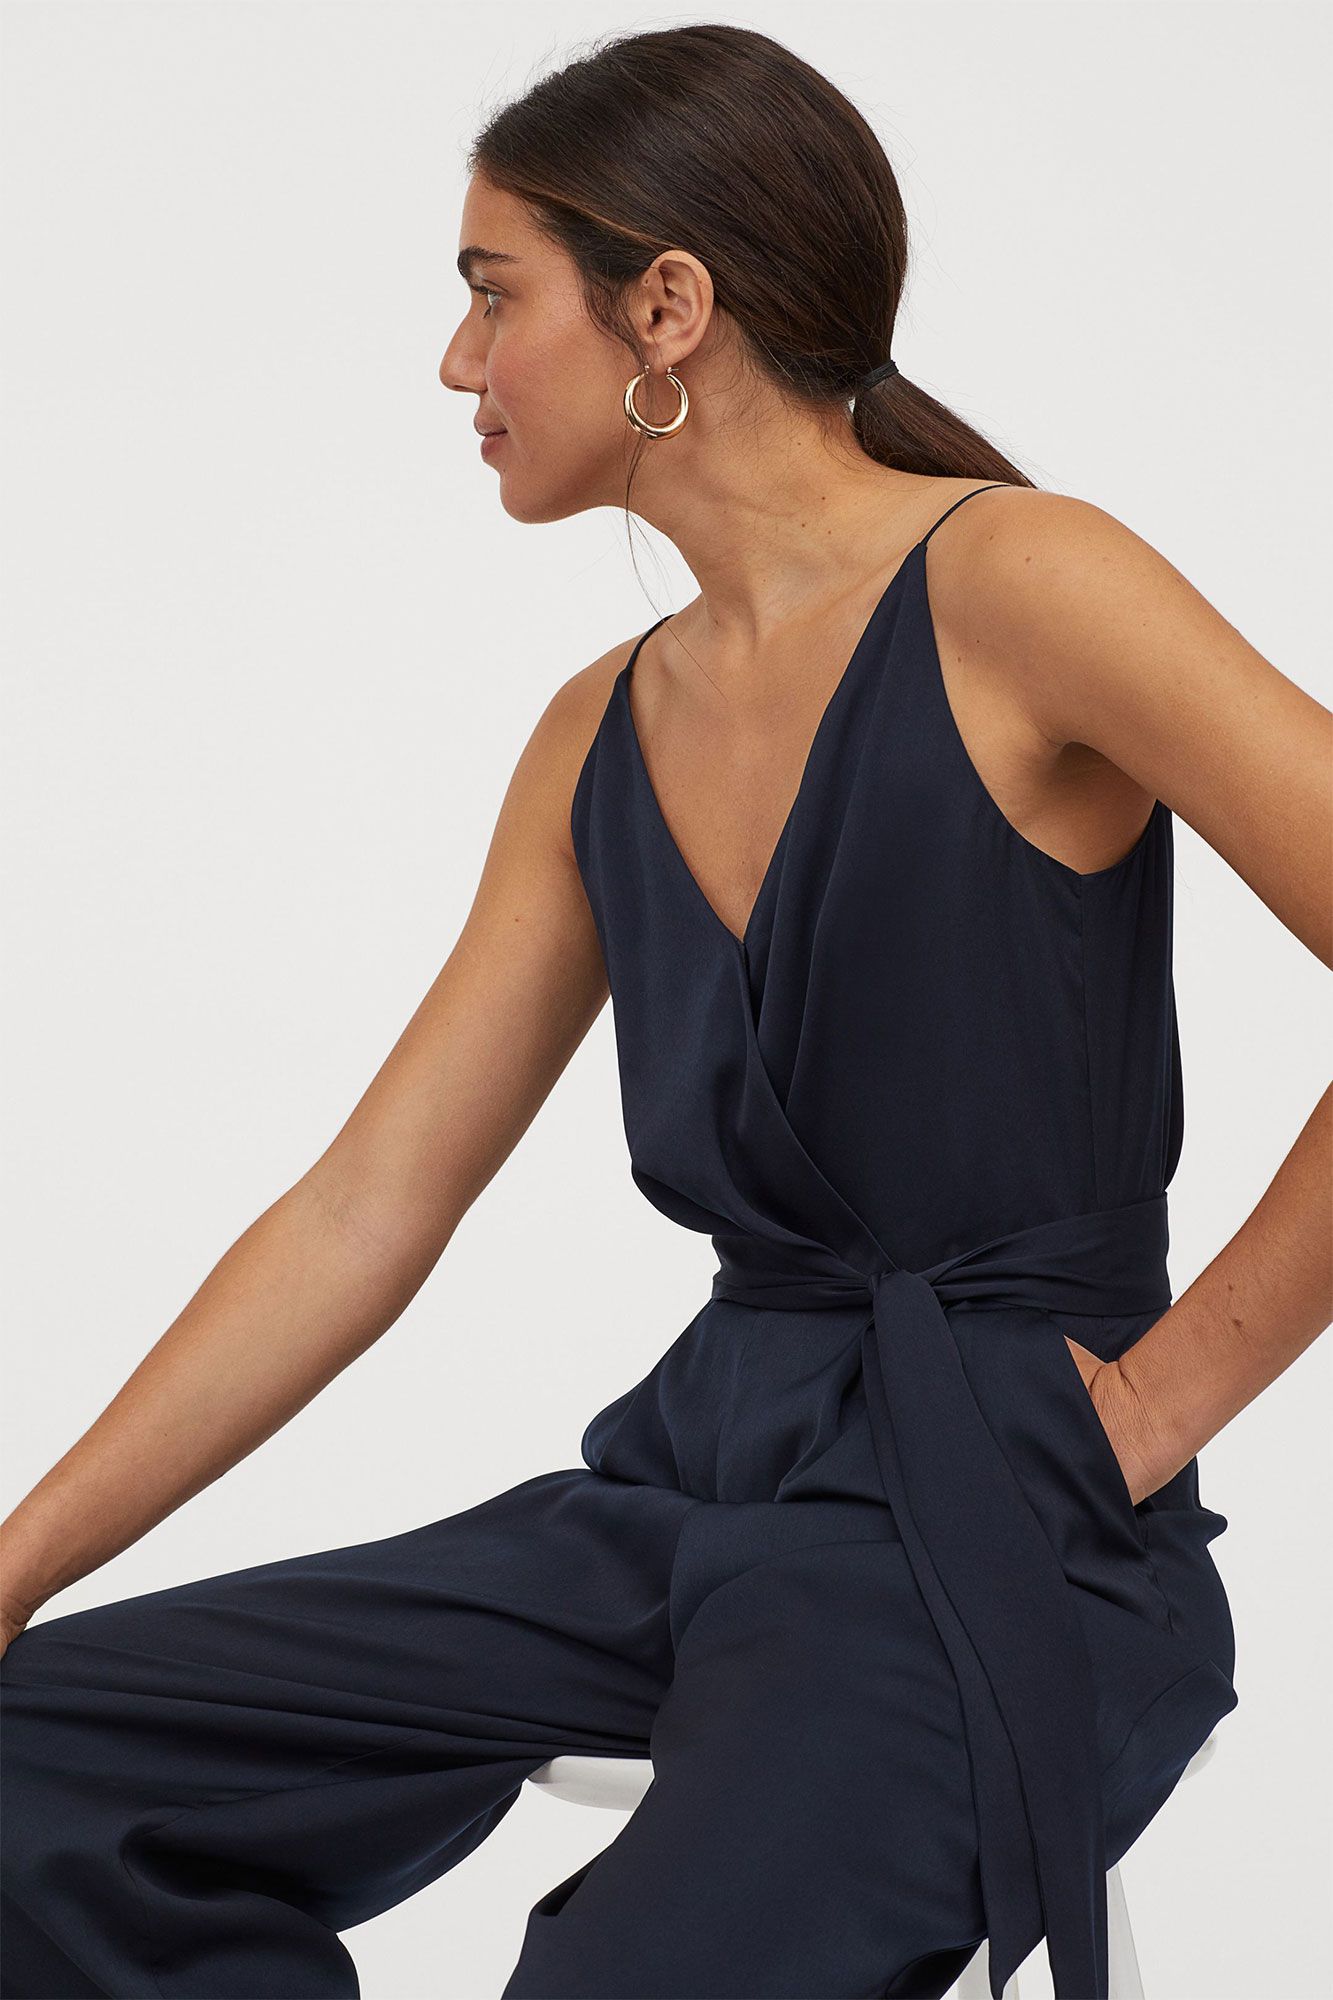 cristal Tibio pastor Este es el mono culotte azul marino de H&M más elegante de 2020